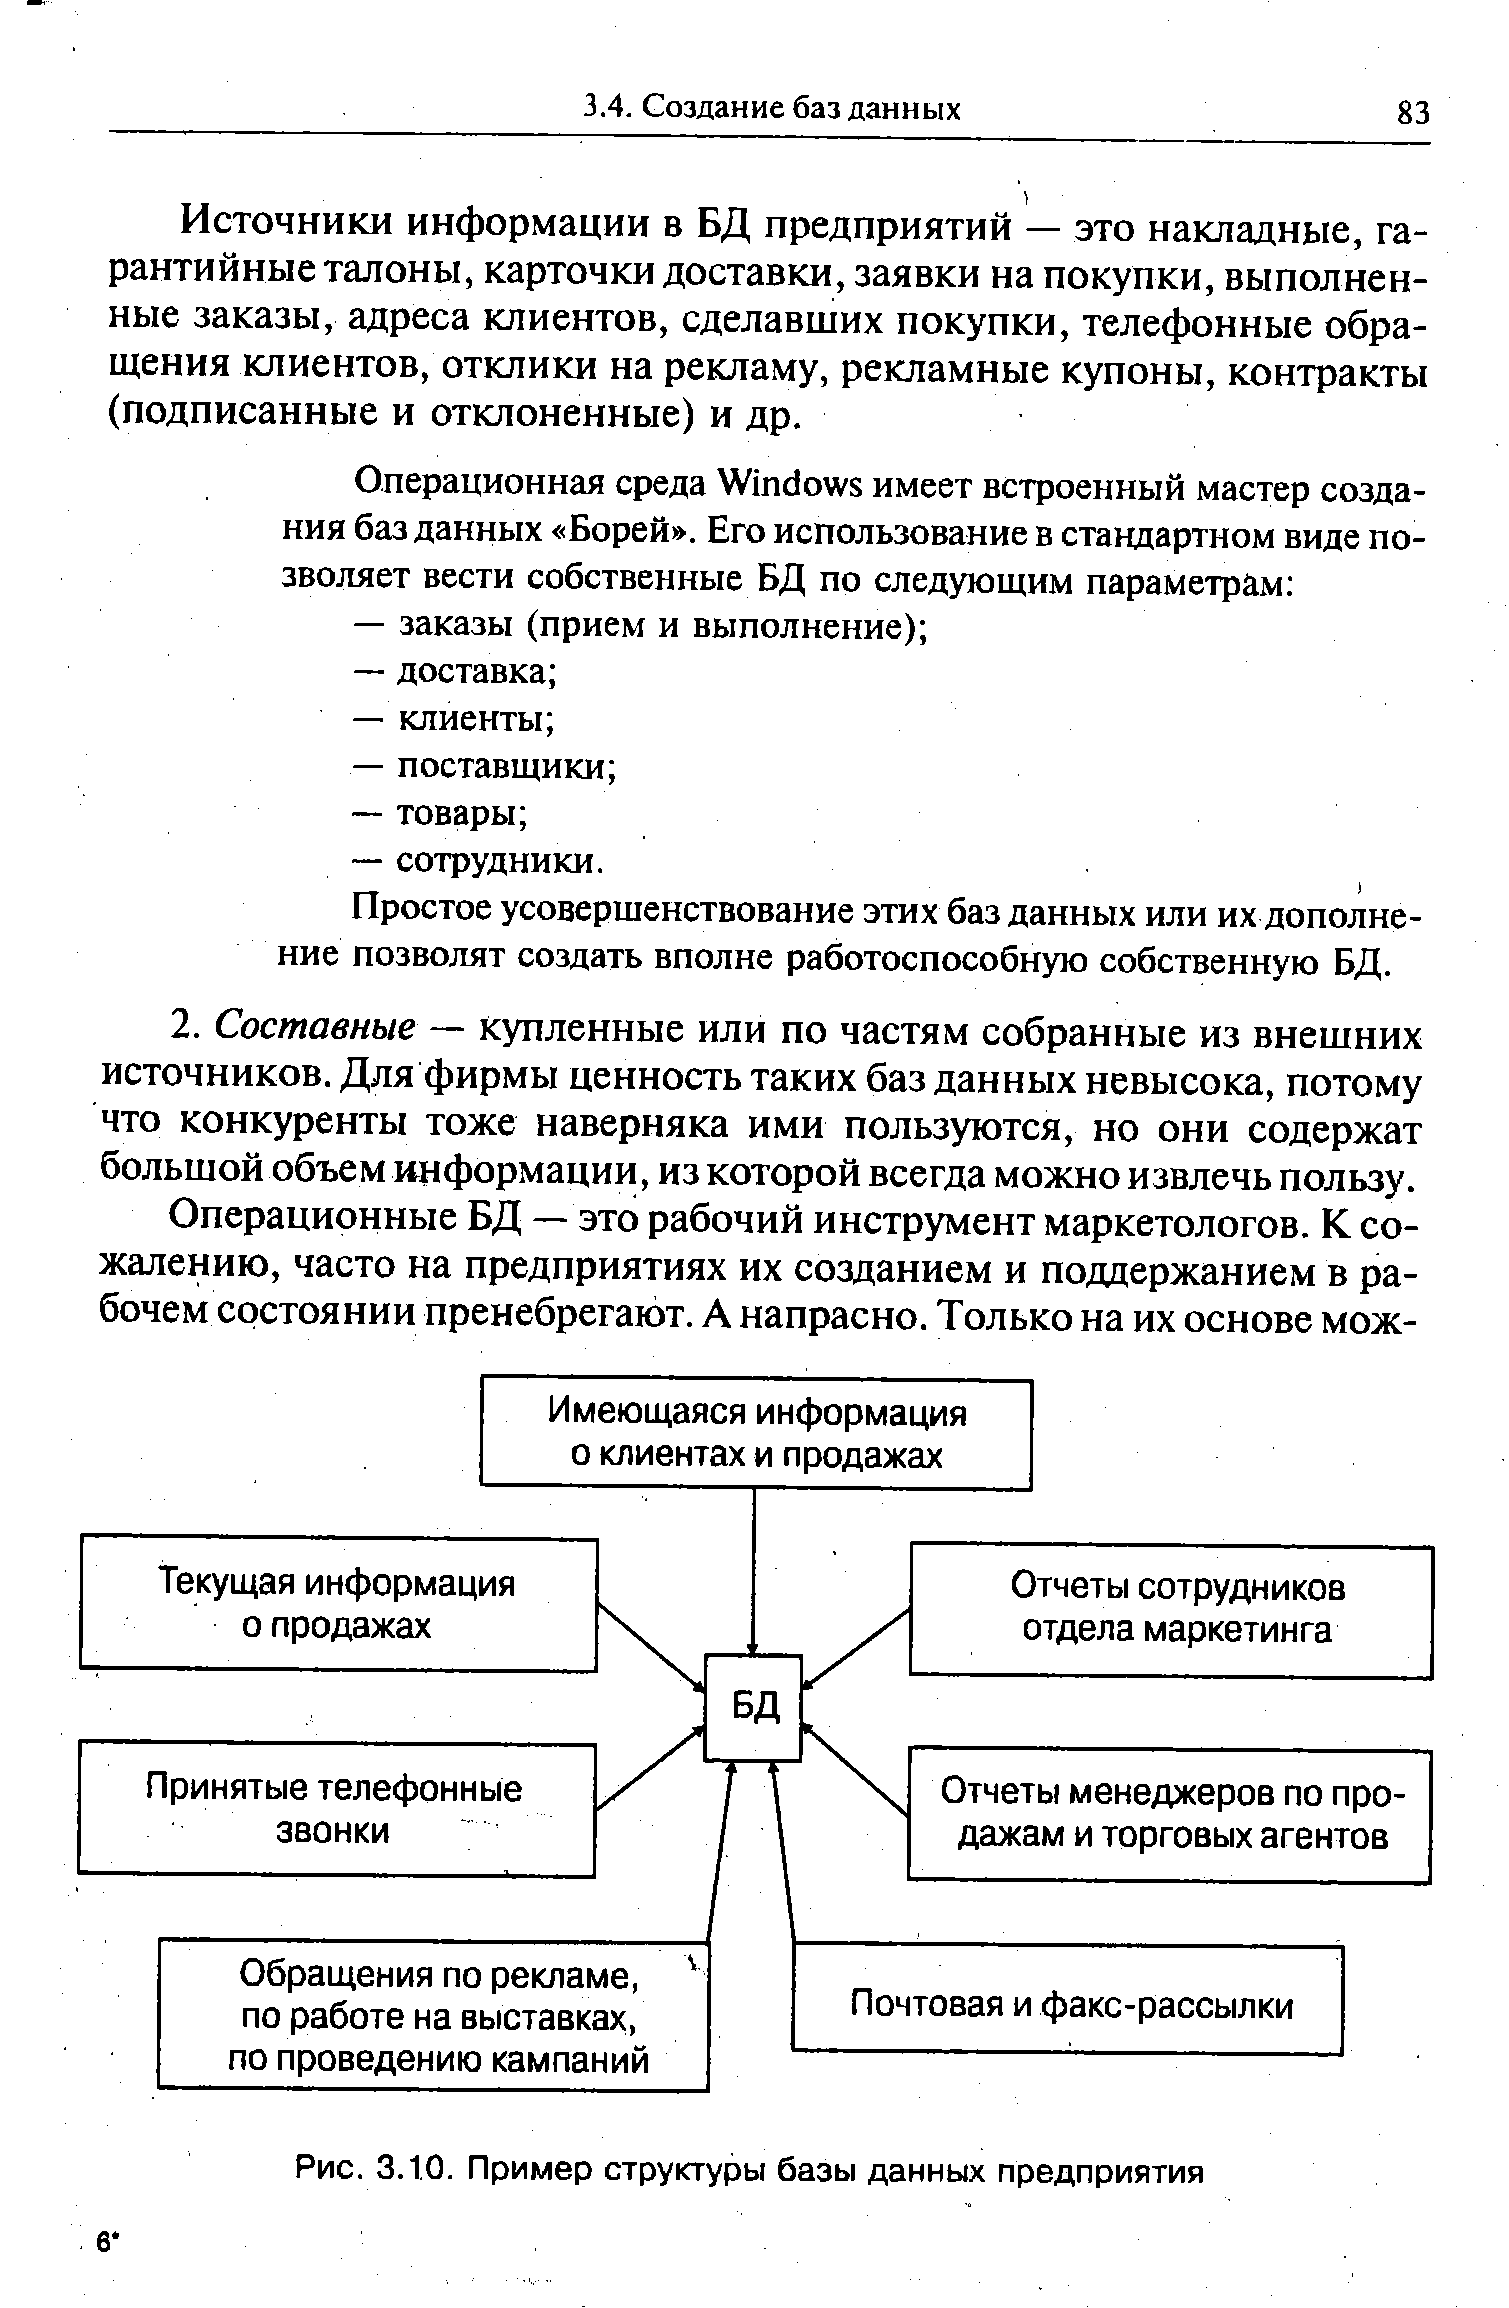 Рис. 3.10. Пример структуры базы данных предприятия
